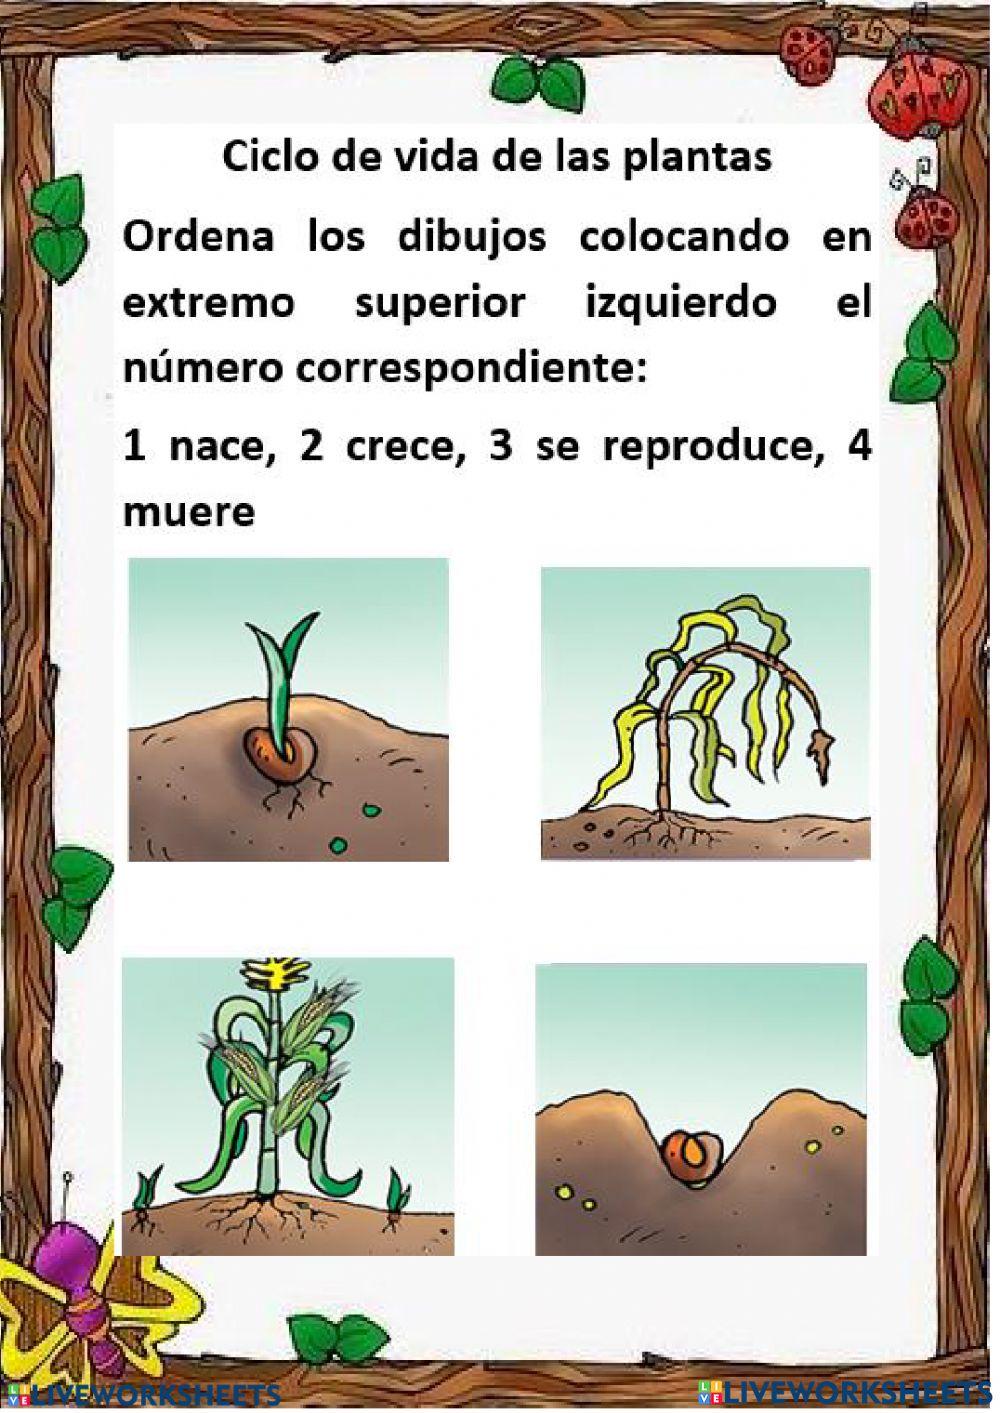 El ciclo de vida de las plantas